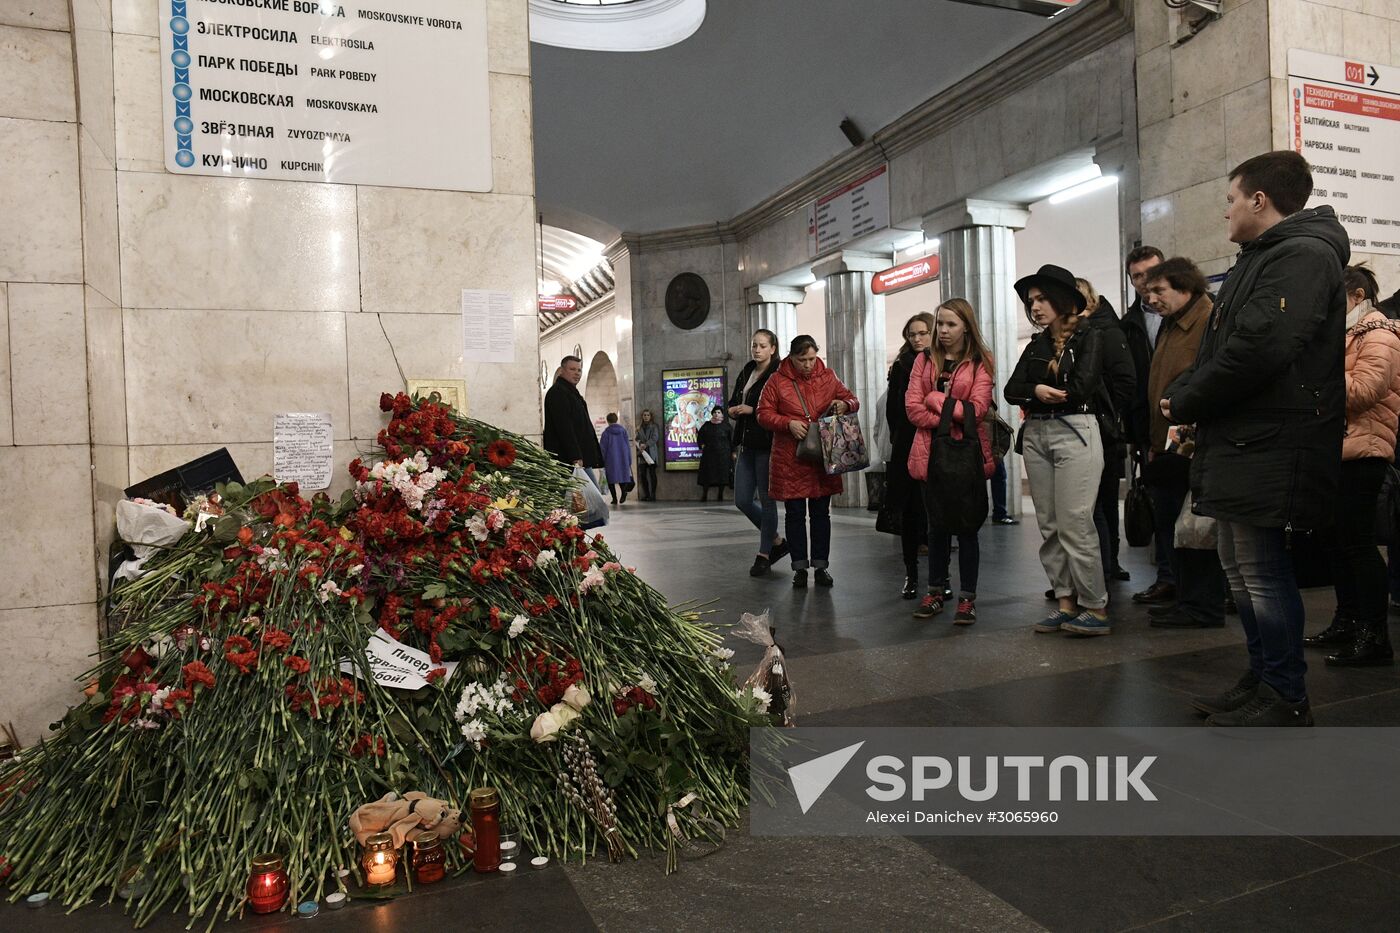 People bring flowers at Tekhnologichesky Institut station